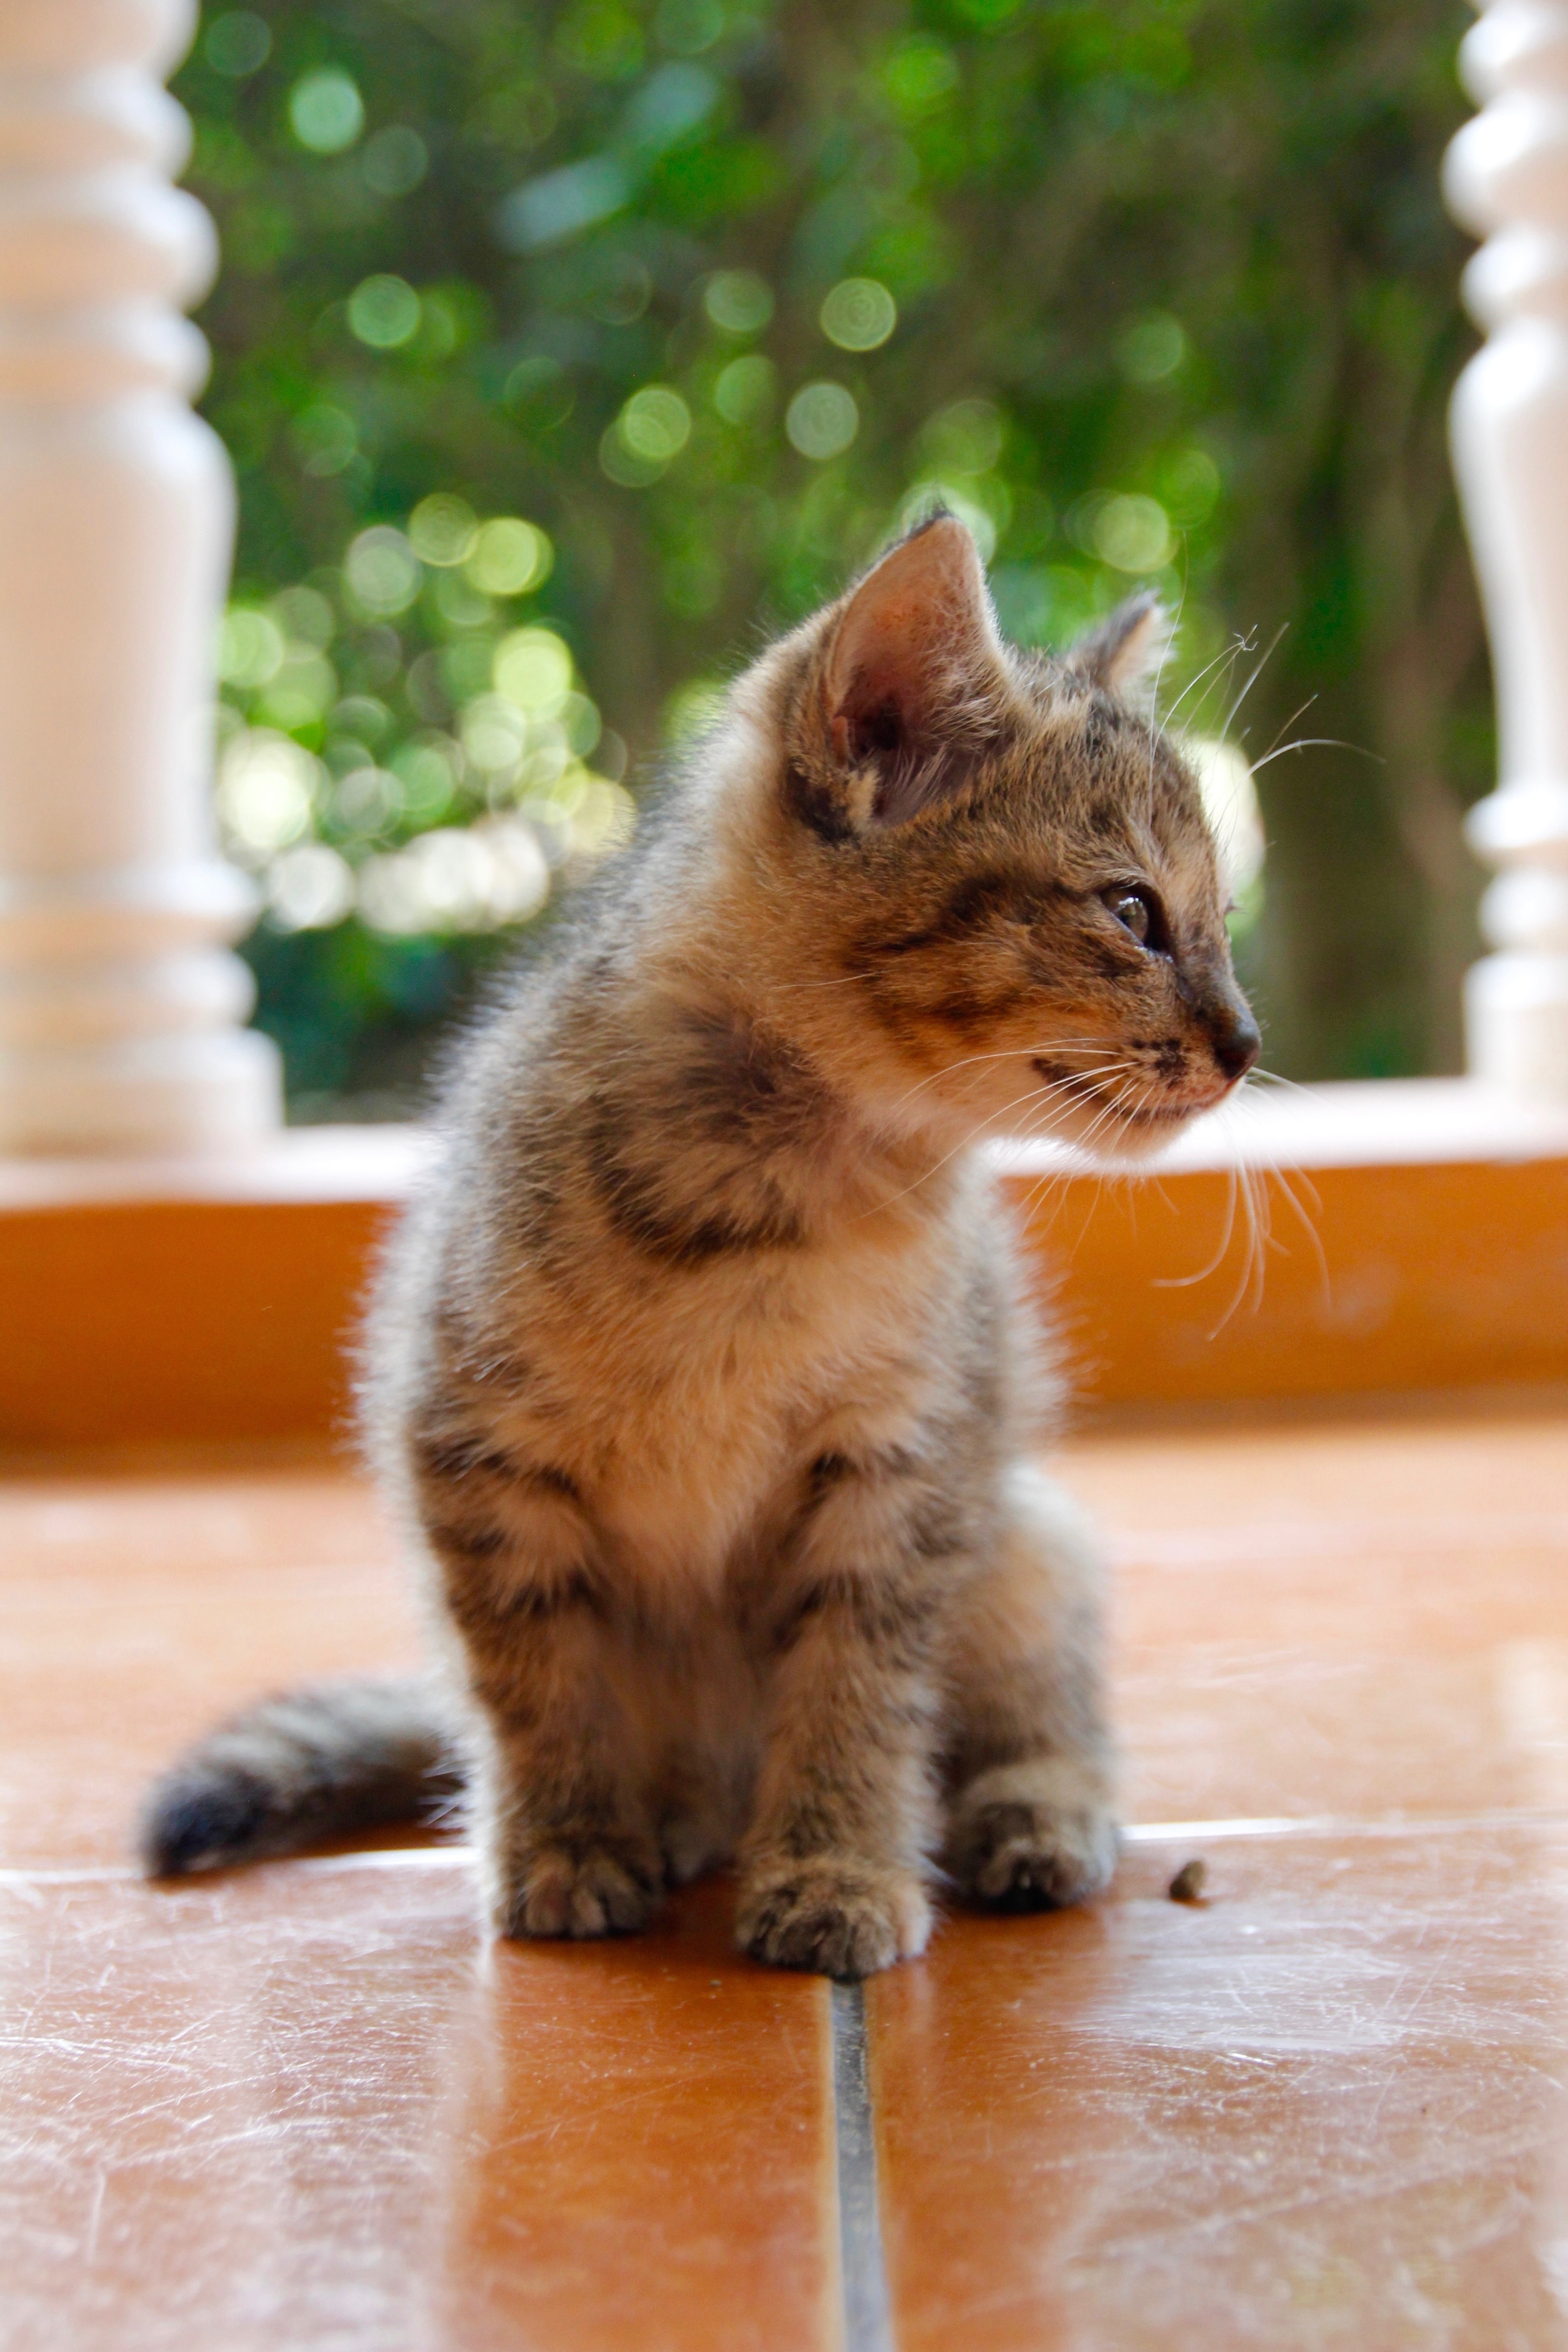 Cat, Cute, Cat Baby, Kitten, Pet, domestic cat, pets